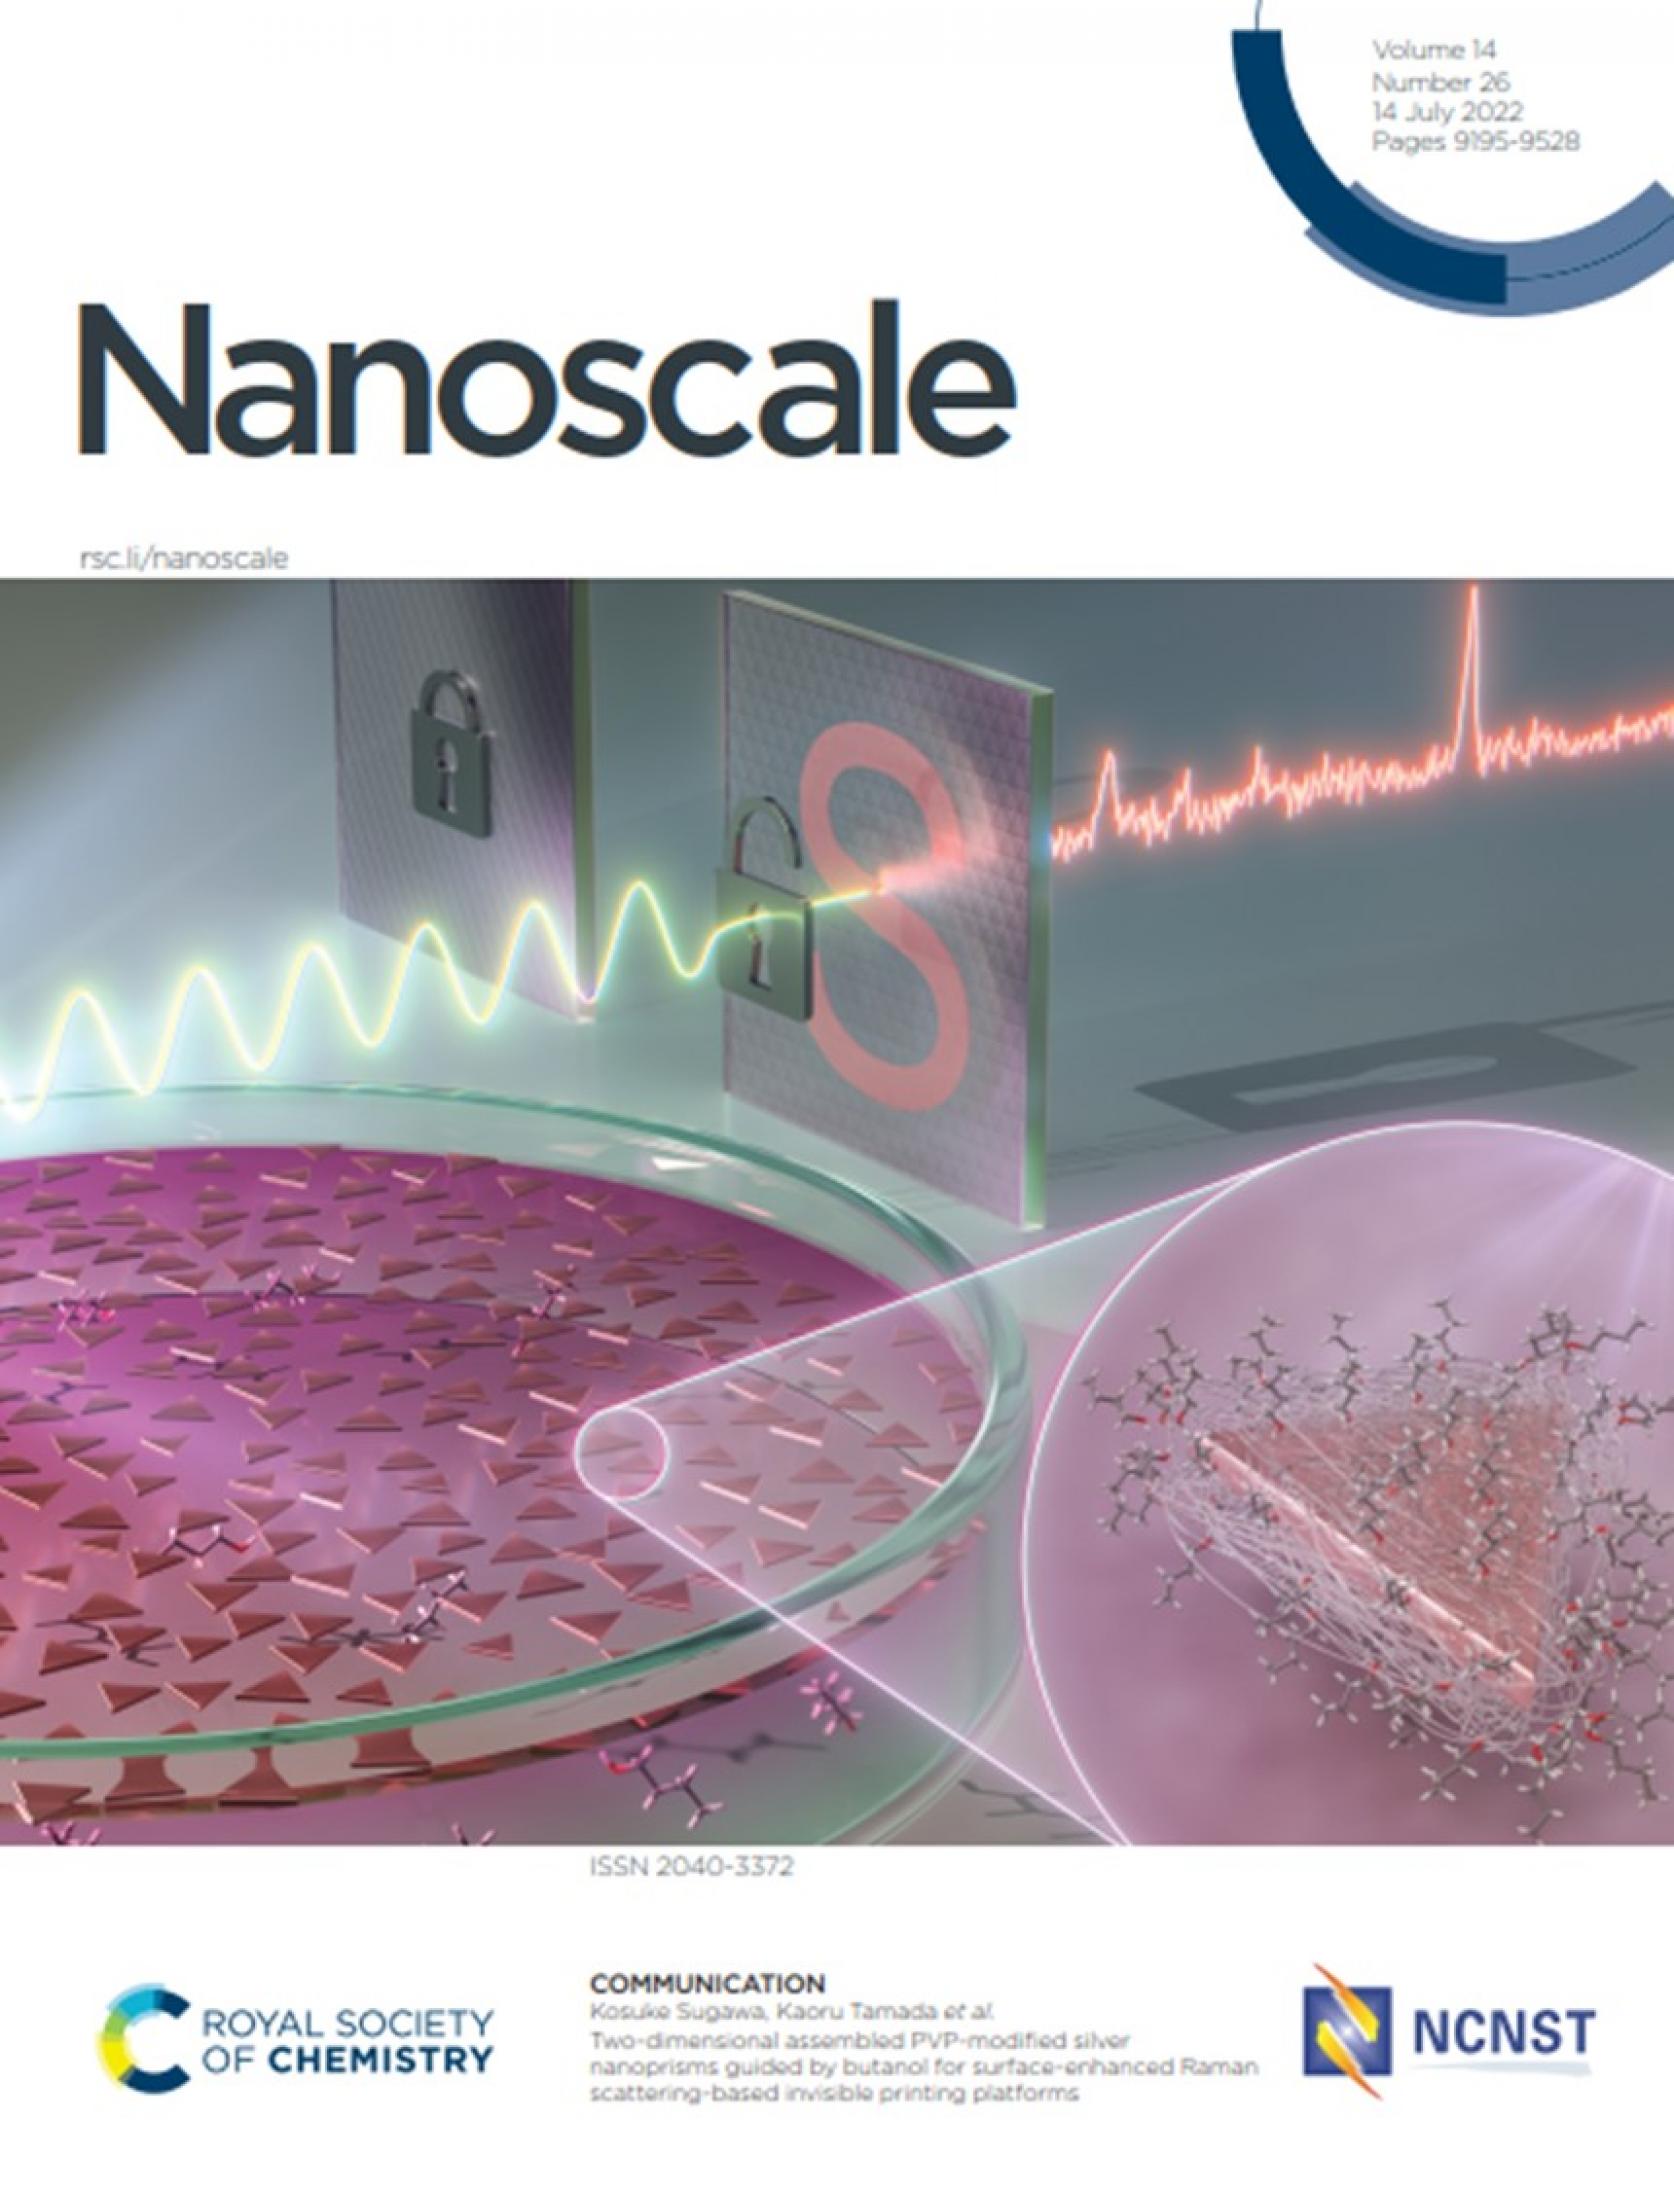 物質応用化学科 超分子化学研究室 須川晃資教授、博士前期課程 早川祐太郎さんらの研究成果が、王立化学会「Nanoscale」誌のInside front coverに採択されました。